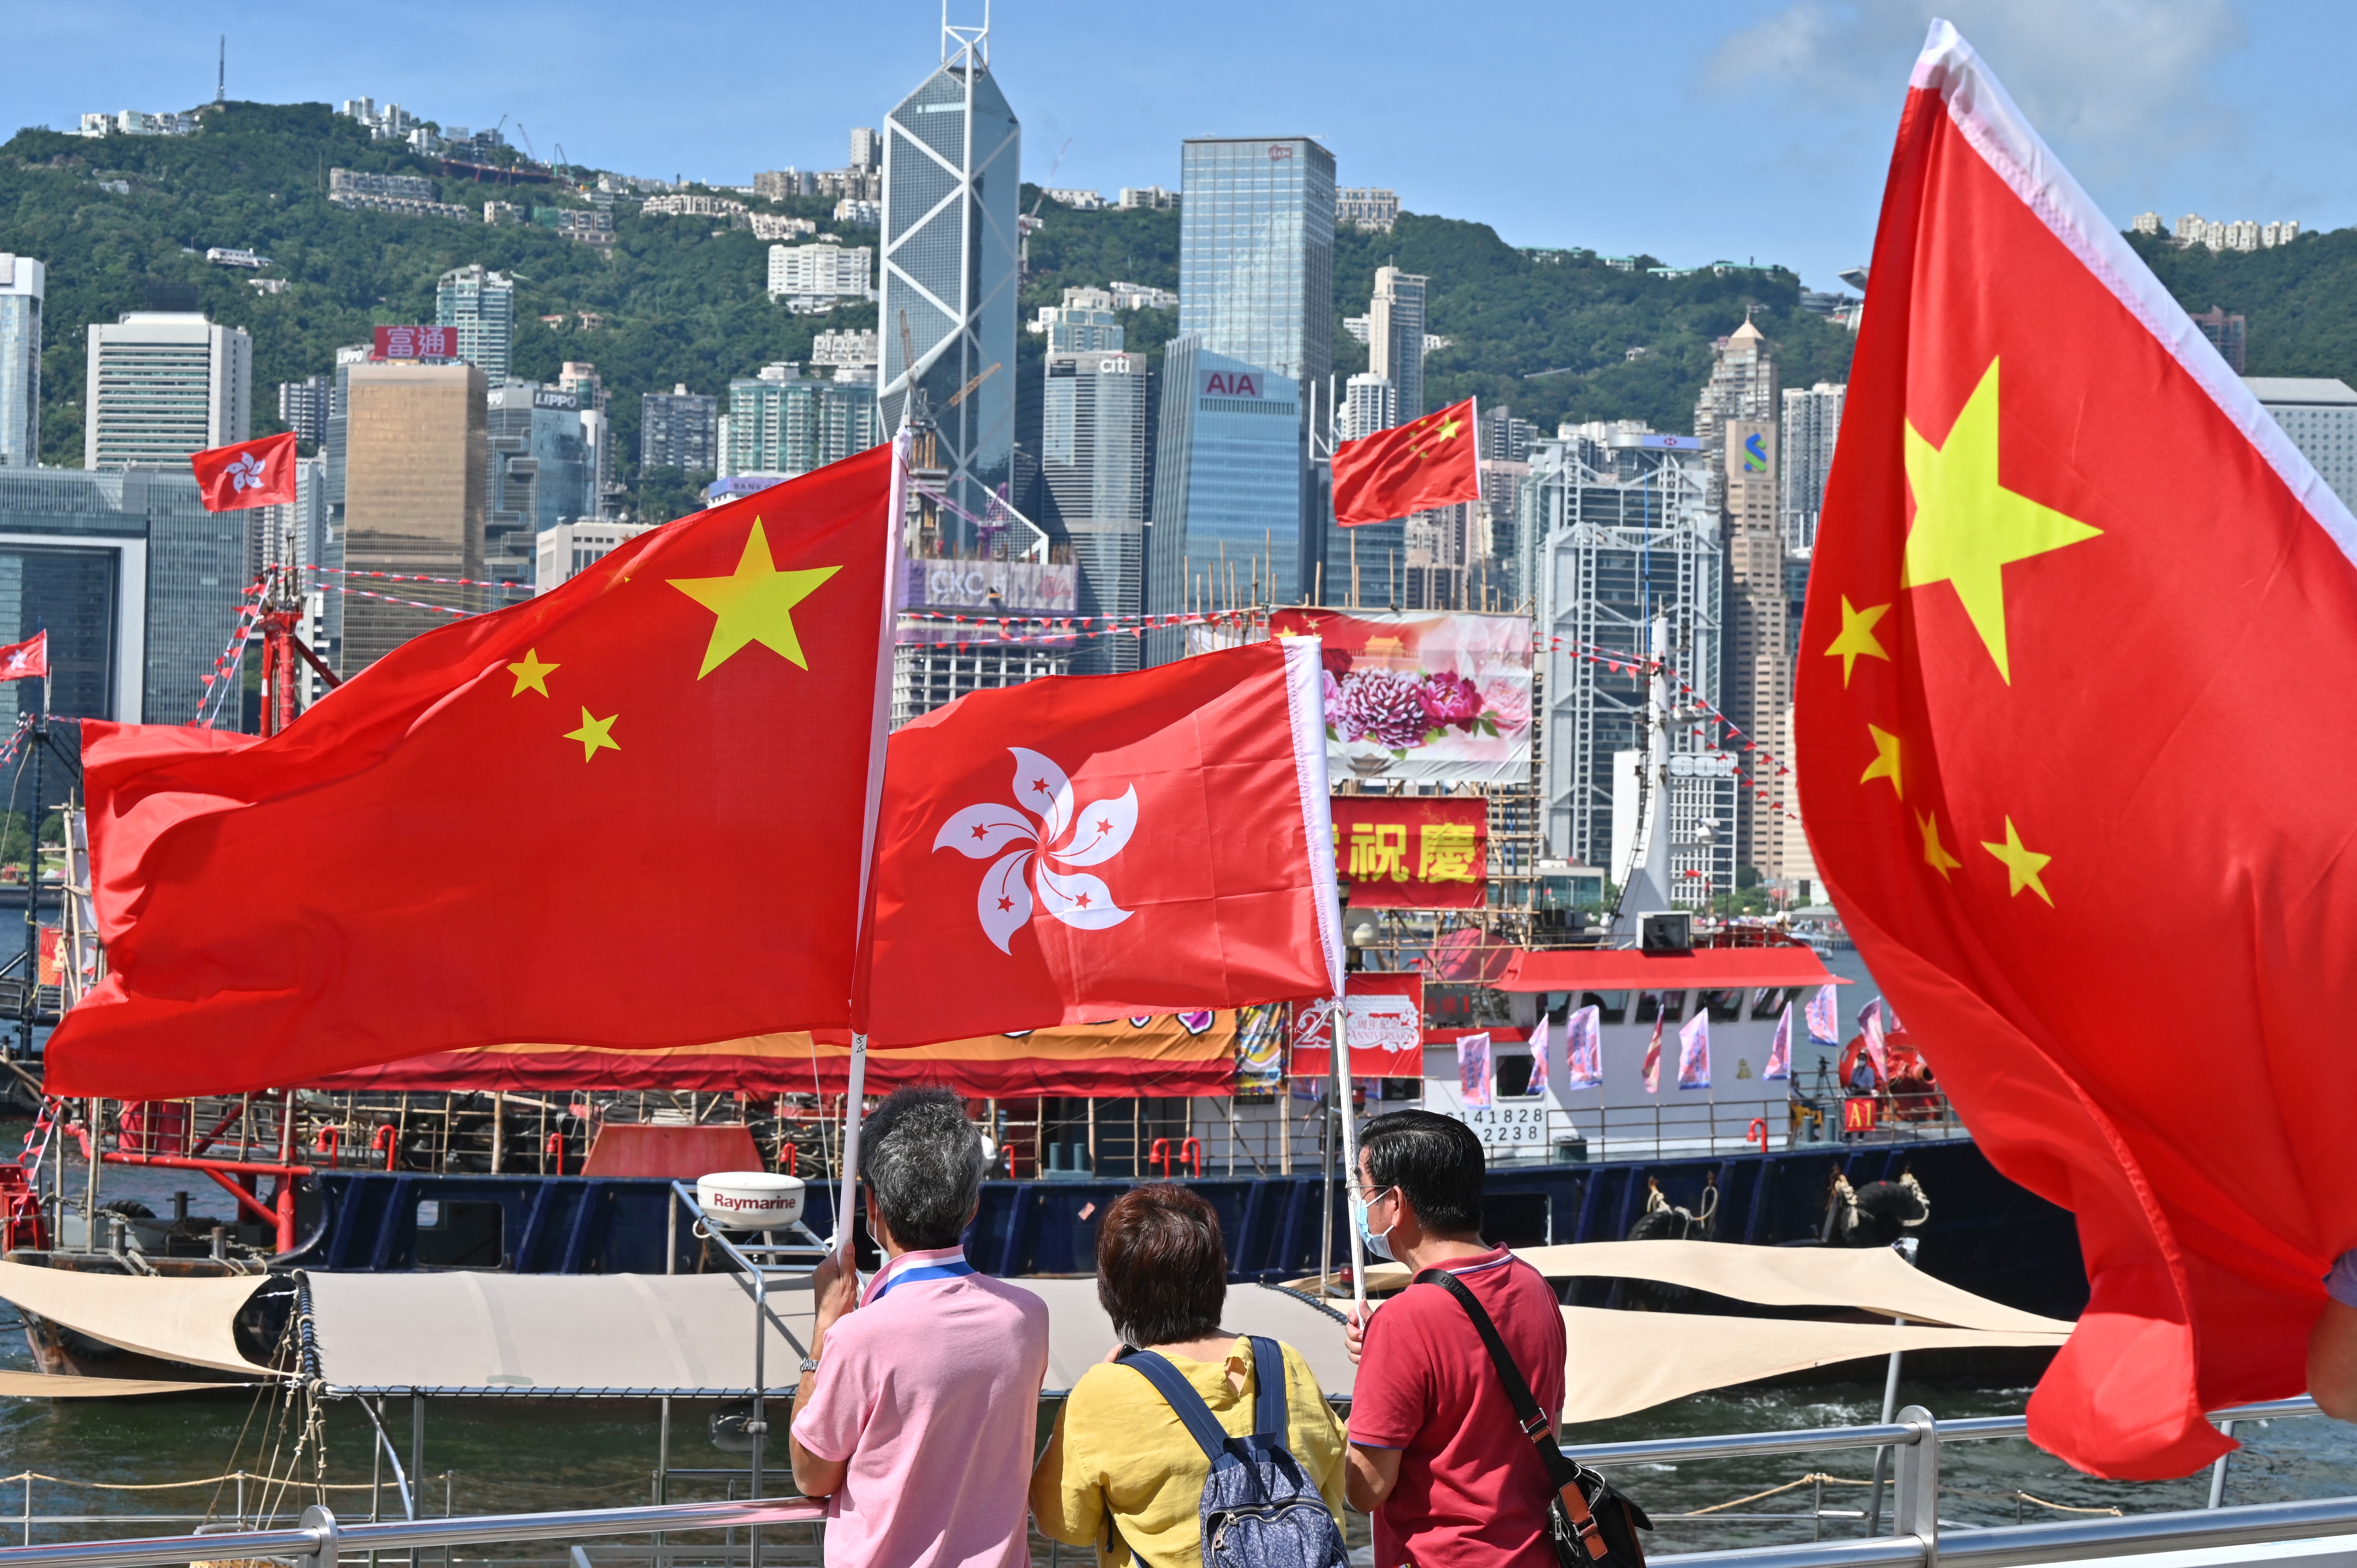 Hồng Kông là một trong những điểm đến du lịch nổi tiếng tại châu Á, với nền văn hóa đa dạng và phong phú. Sau 25 năm trở thành một khu tự trị thuộc Trung Quốc, Hồng Kông đang phải đối mặt với nhiều thách thức và khó khăn. Tuy nhiên, sự phát triển của Hồng Kông vẫn luôn được dư luận quan tâm và chú trọng. Hãy tìm hiểu thêm về tương lai của Hồng Kông và cập nhật những thông tin mới nhất tại đây.